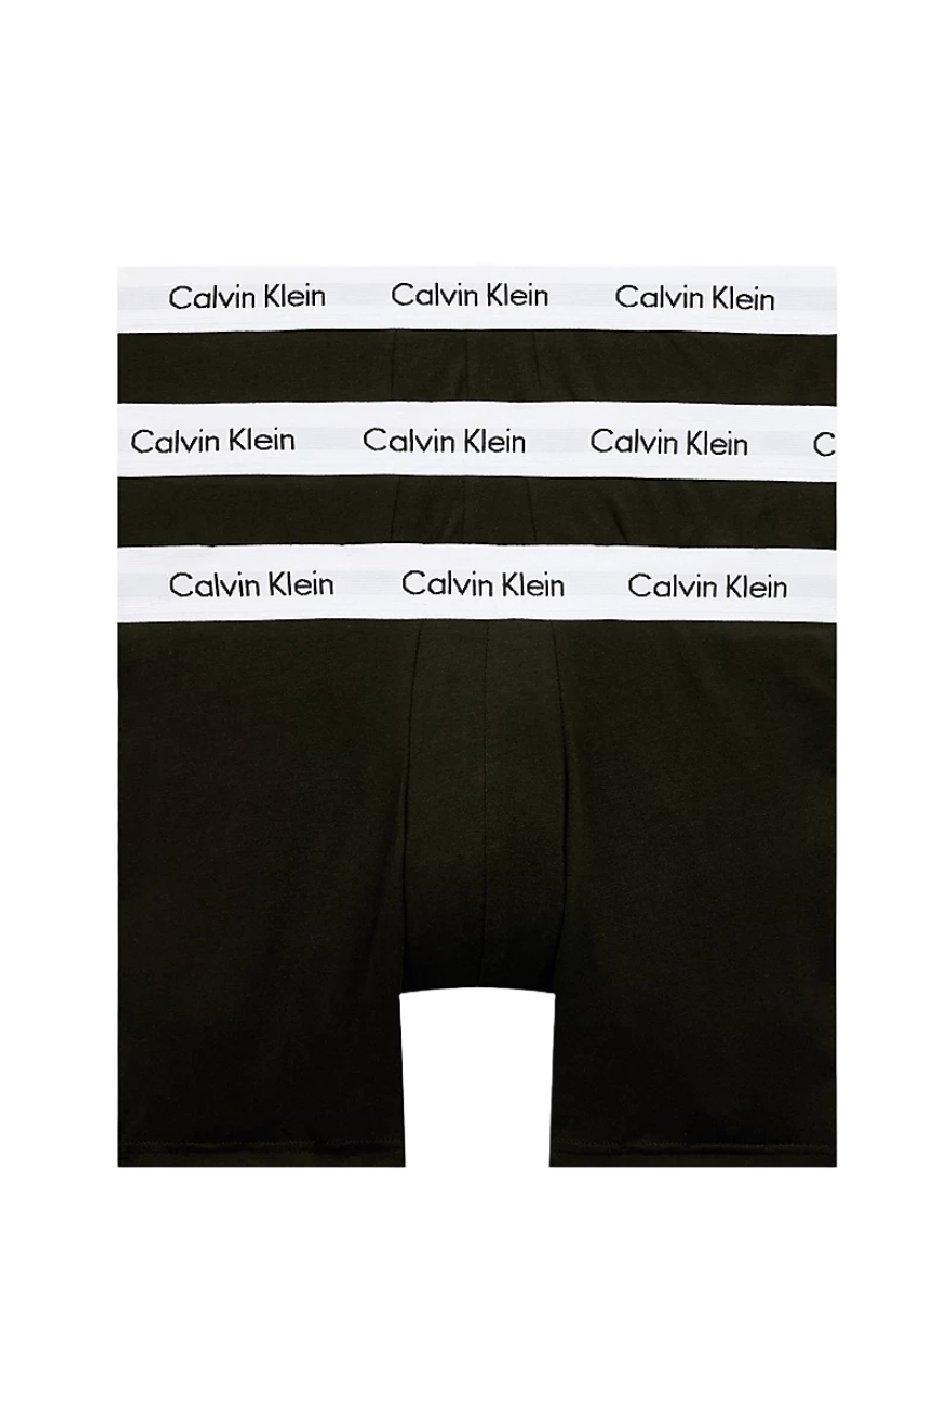 Комплект из 3 трусов-боксеров из эластичного хлопка CALVIN KLEIN, черный